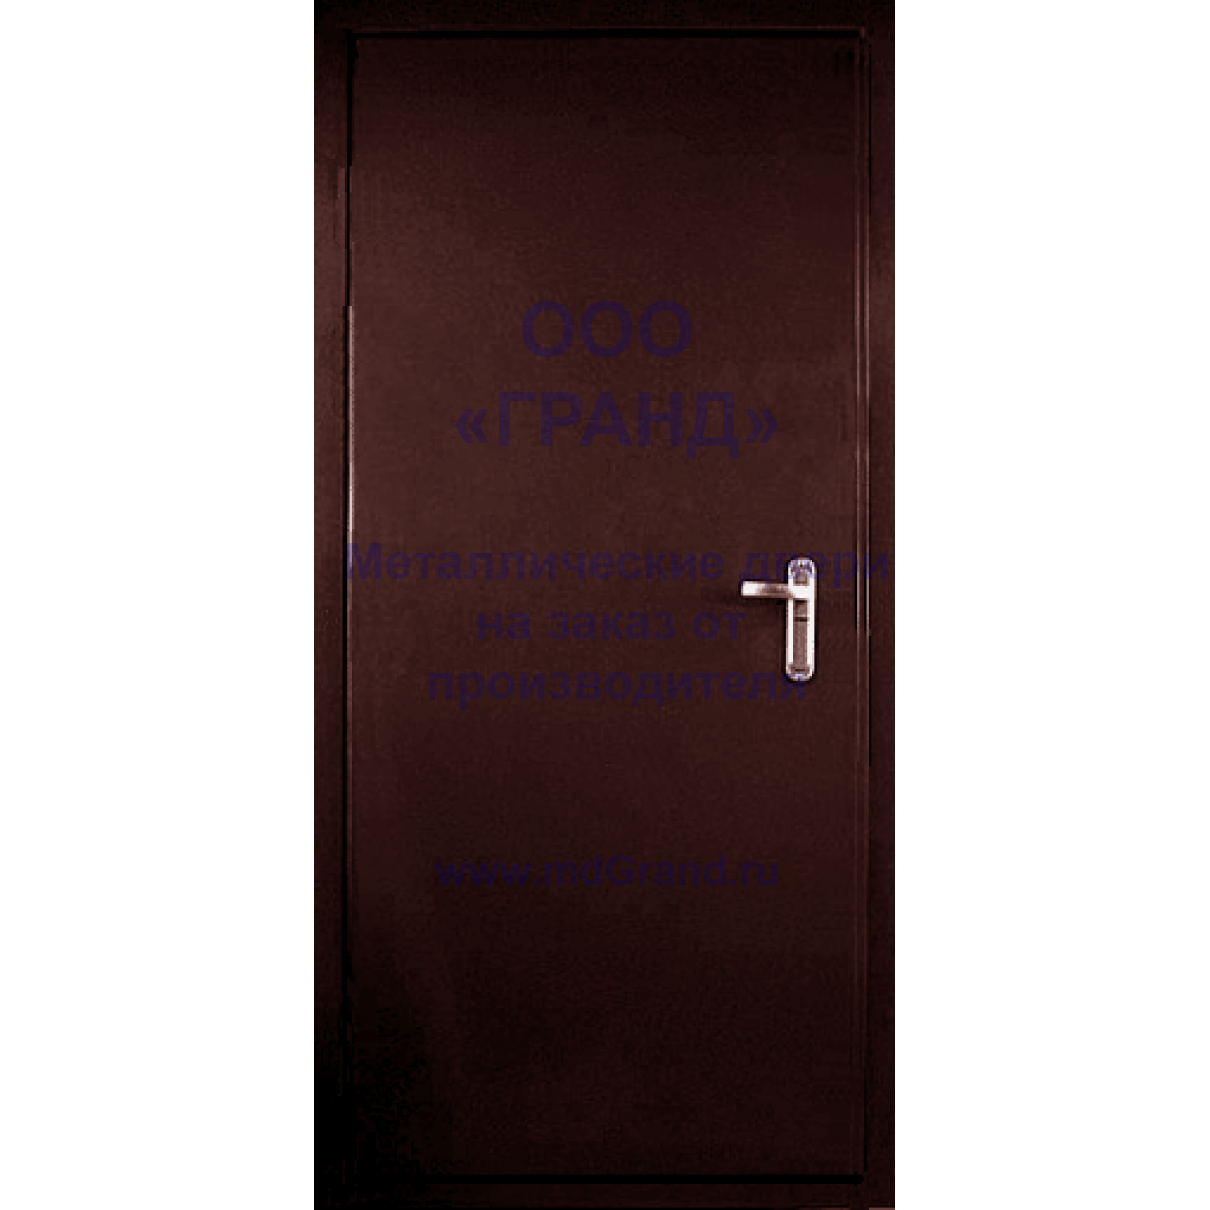 Doors 2 двери. Дверь 2сторонный коричневый для печати. QEX 2 дверь. Росса 2 дверь. Дверь AGK-2.